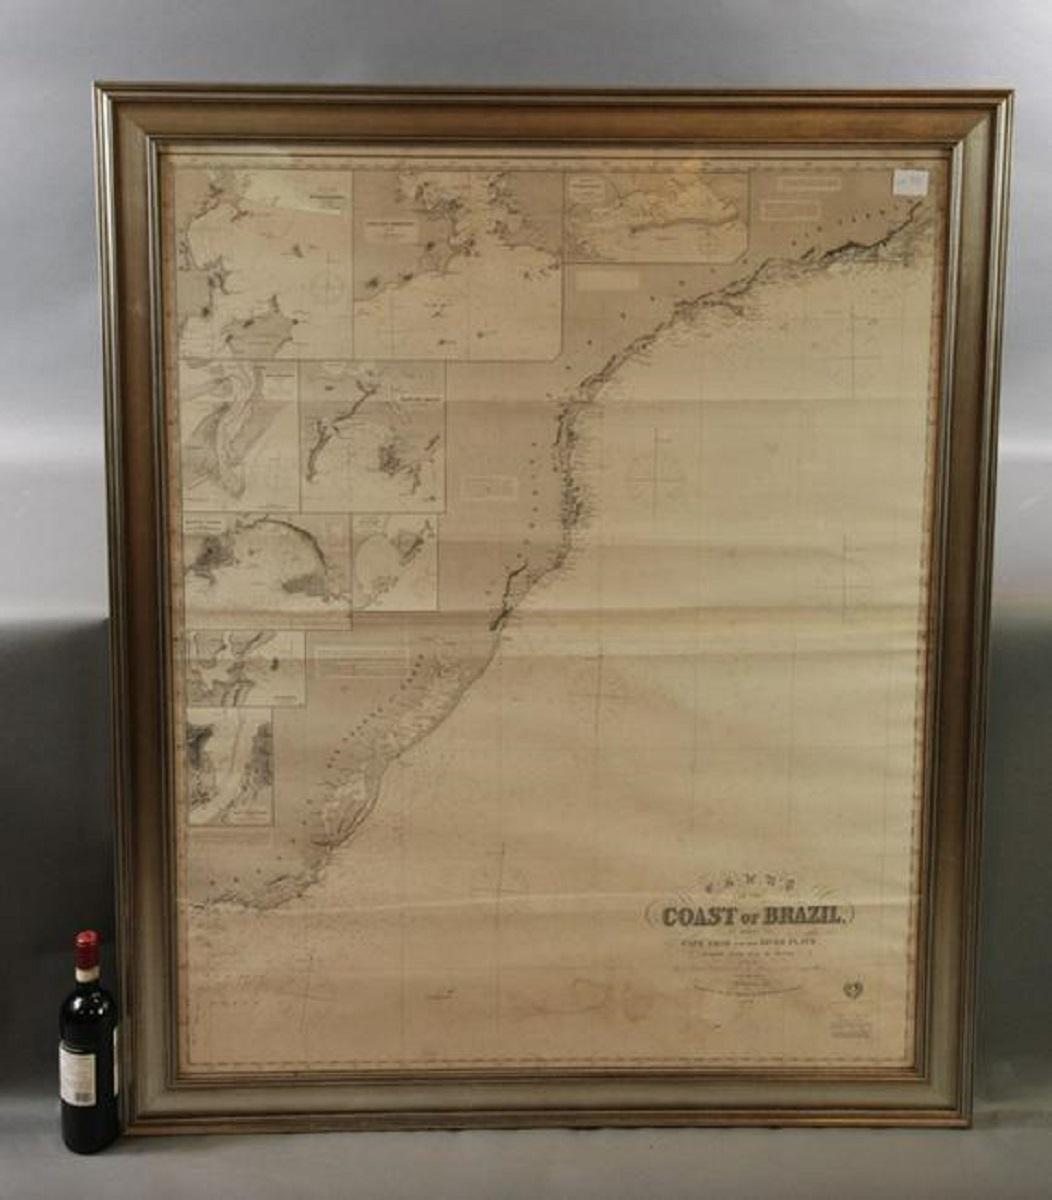 Imray & Son 1876 Seekarte der Küste Brasiliens zwischen Kap Frio und dem Fluss Plate. Schön gerahmt. Gesamtabmessungen: 46